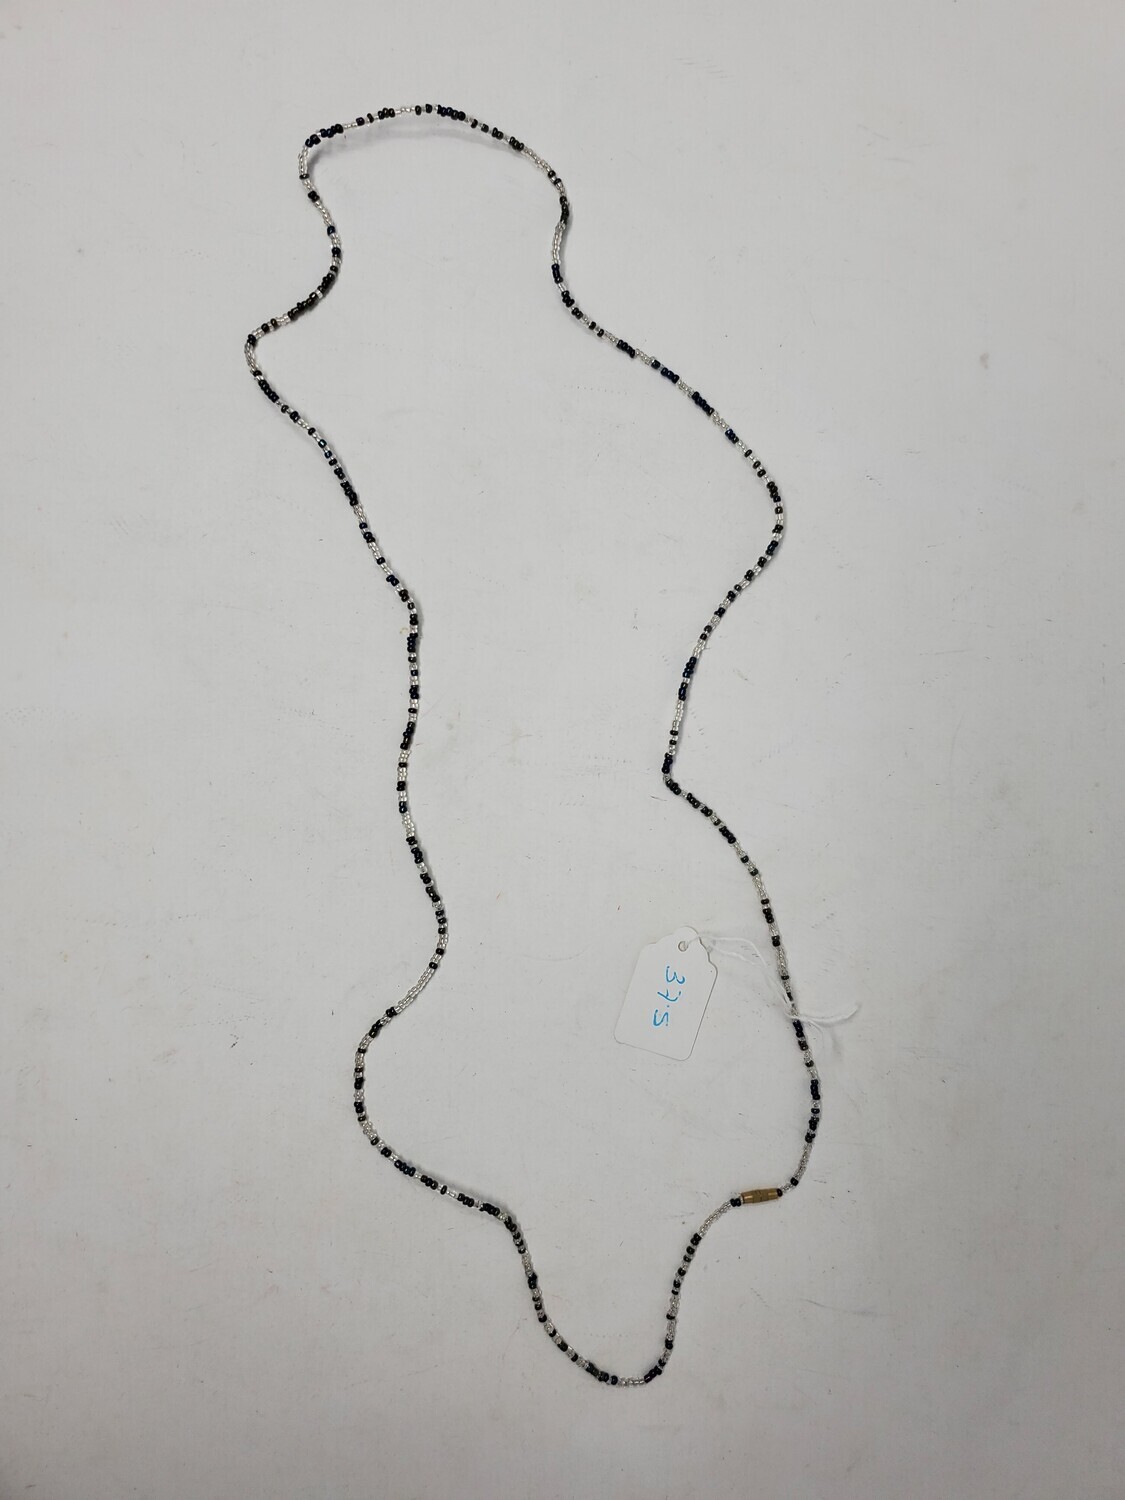 Handbeaded African Waist Beads - Size 37" / 94cm